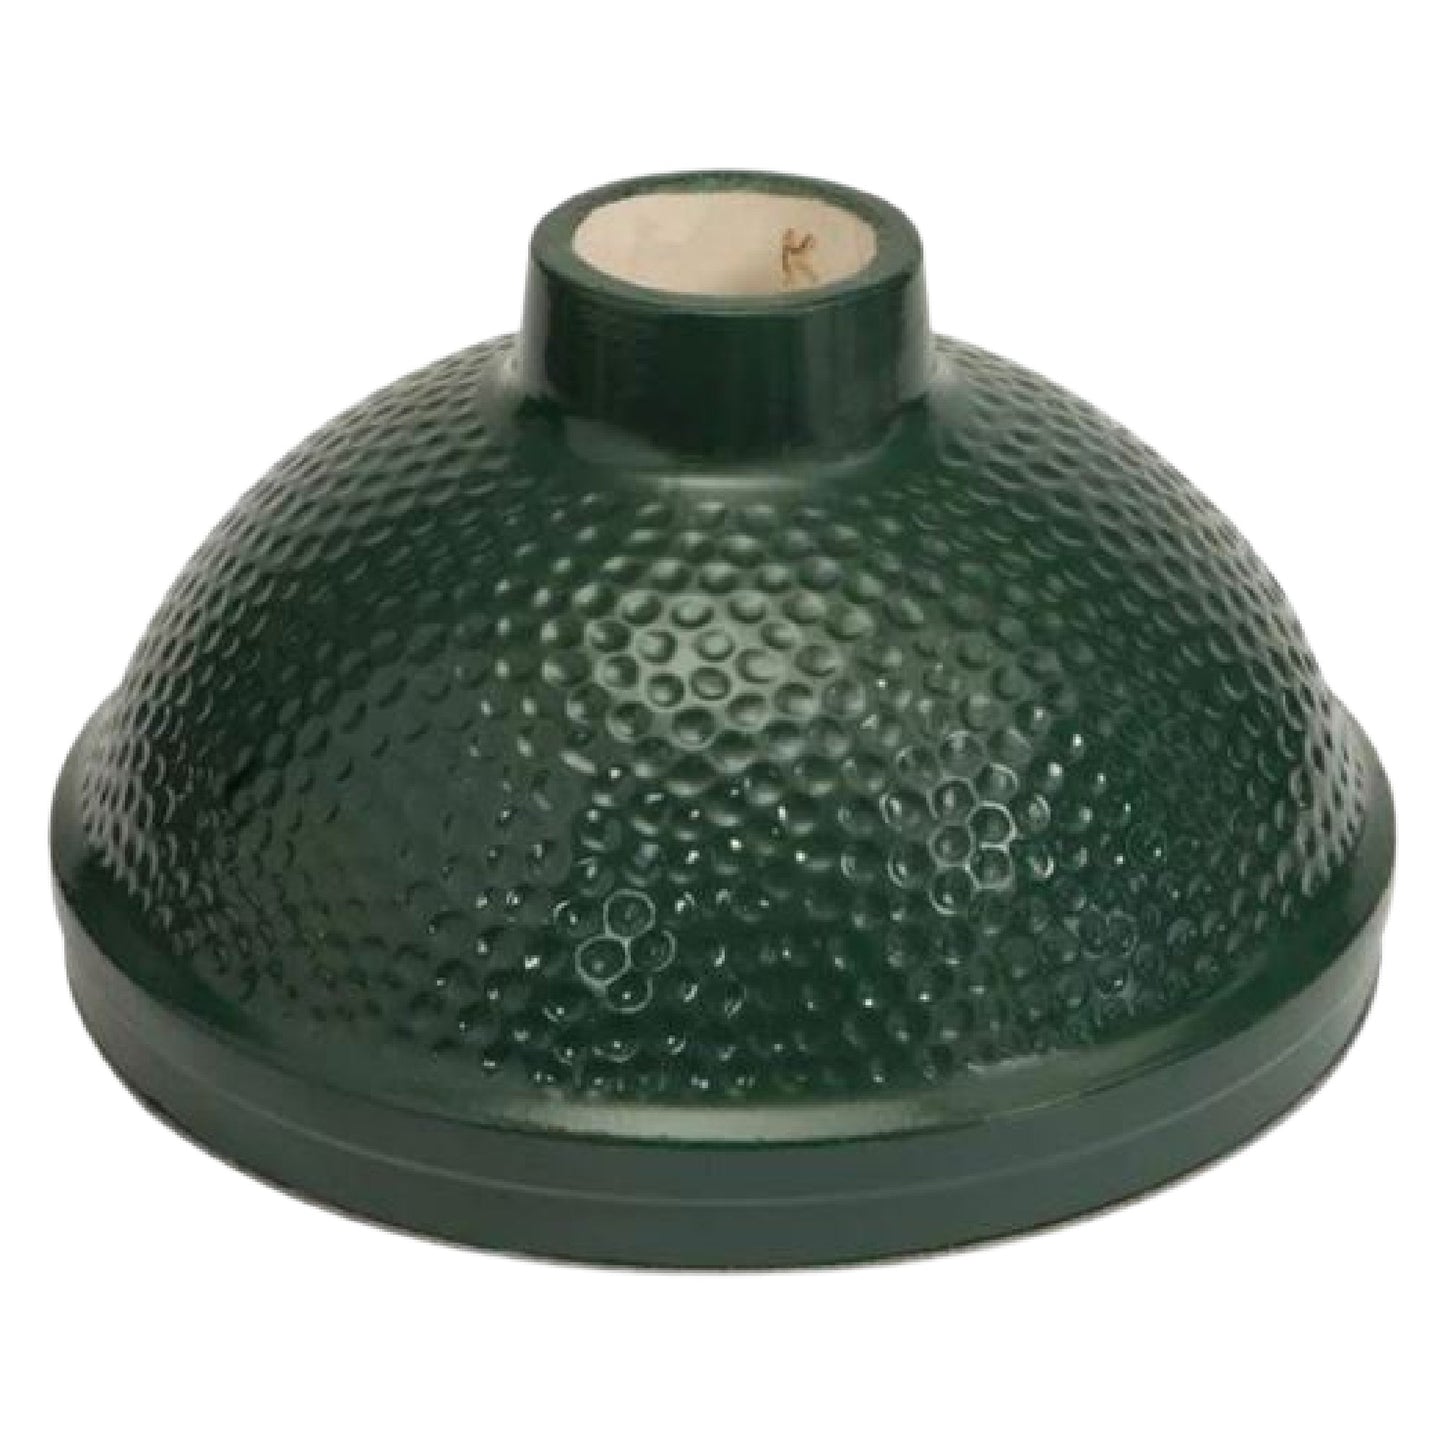 Big Green Egg Ceramic Dome for Medium Egg